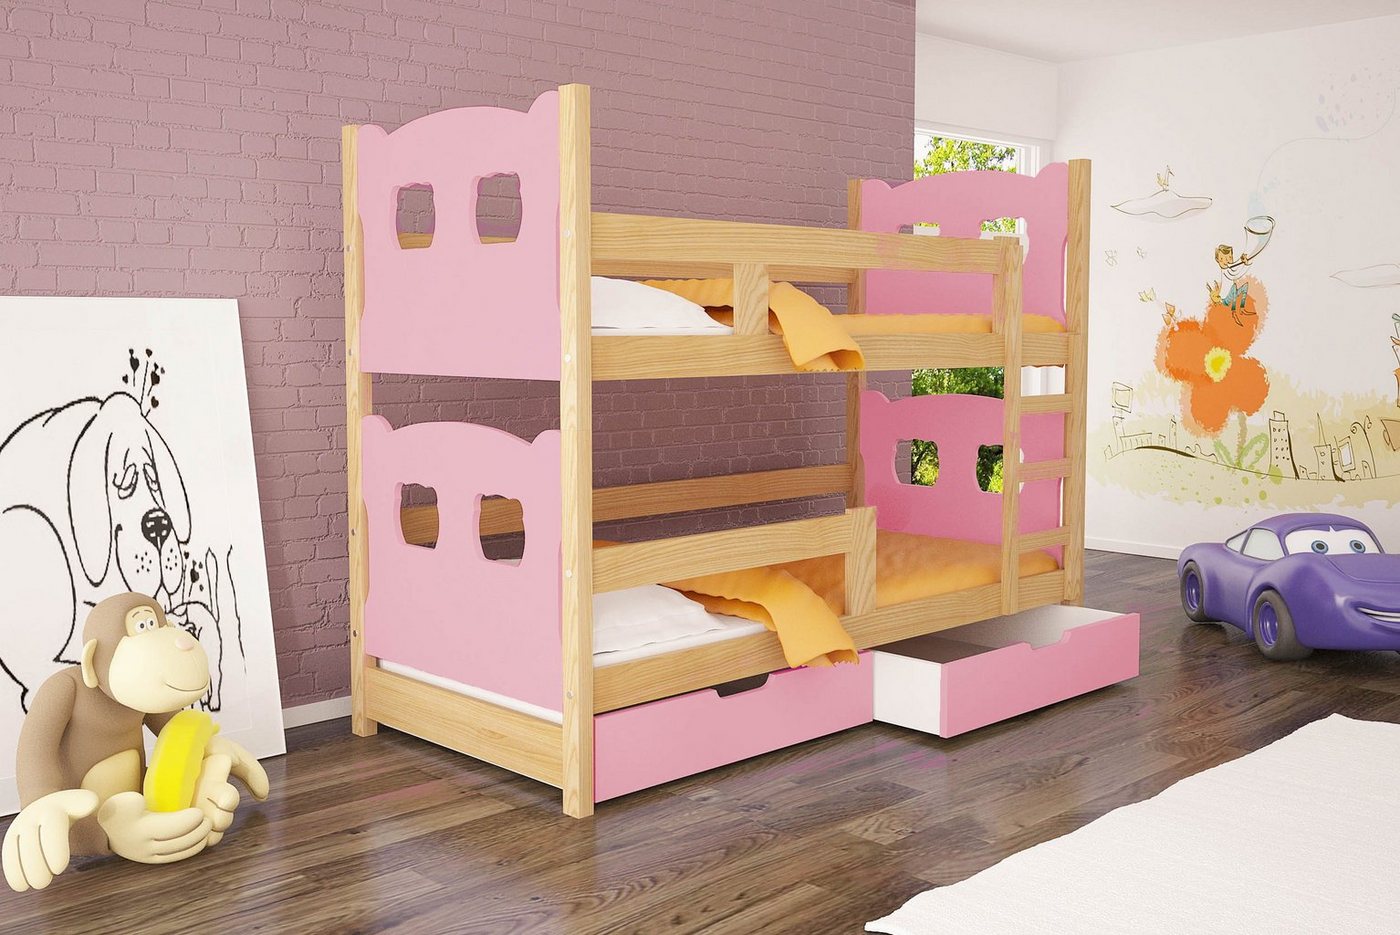 99rooms Kinderbett Mecky (Kinderbett, Bett), 75x180 cm, mit Bettkasten, Kiefer, mit Leiter und Rausfallschutz, Modern Design, für Kinder von 99rooms